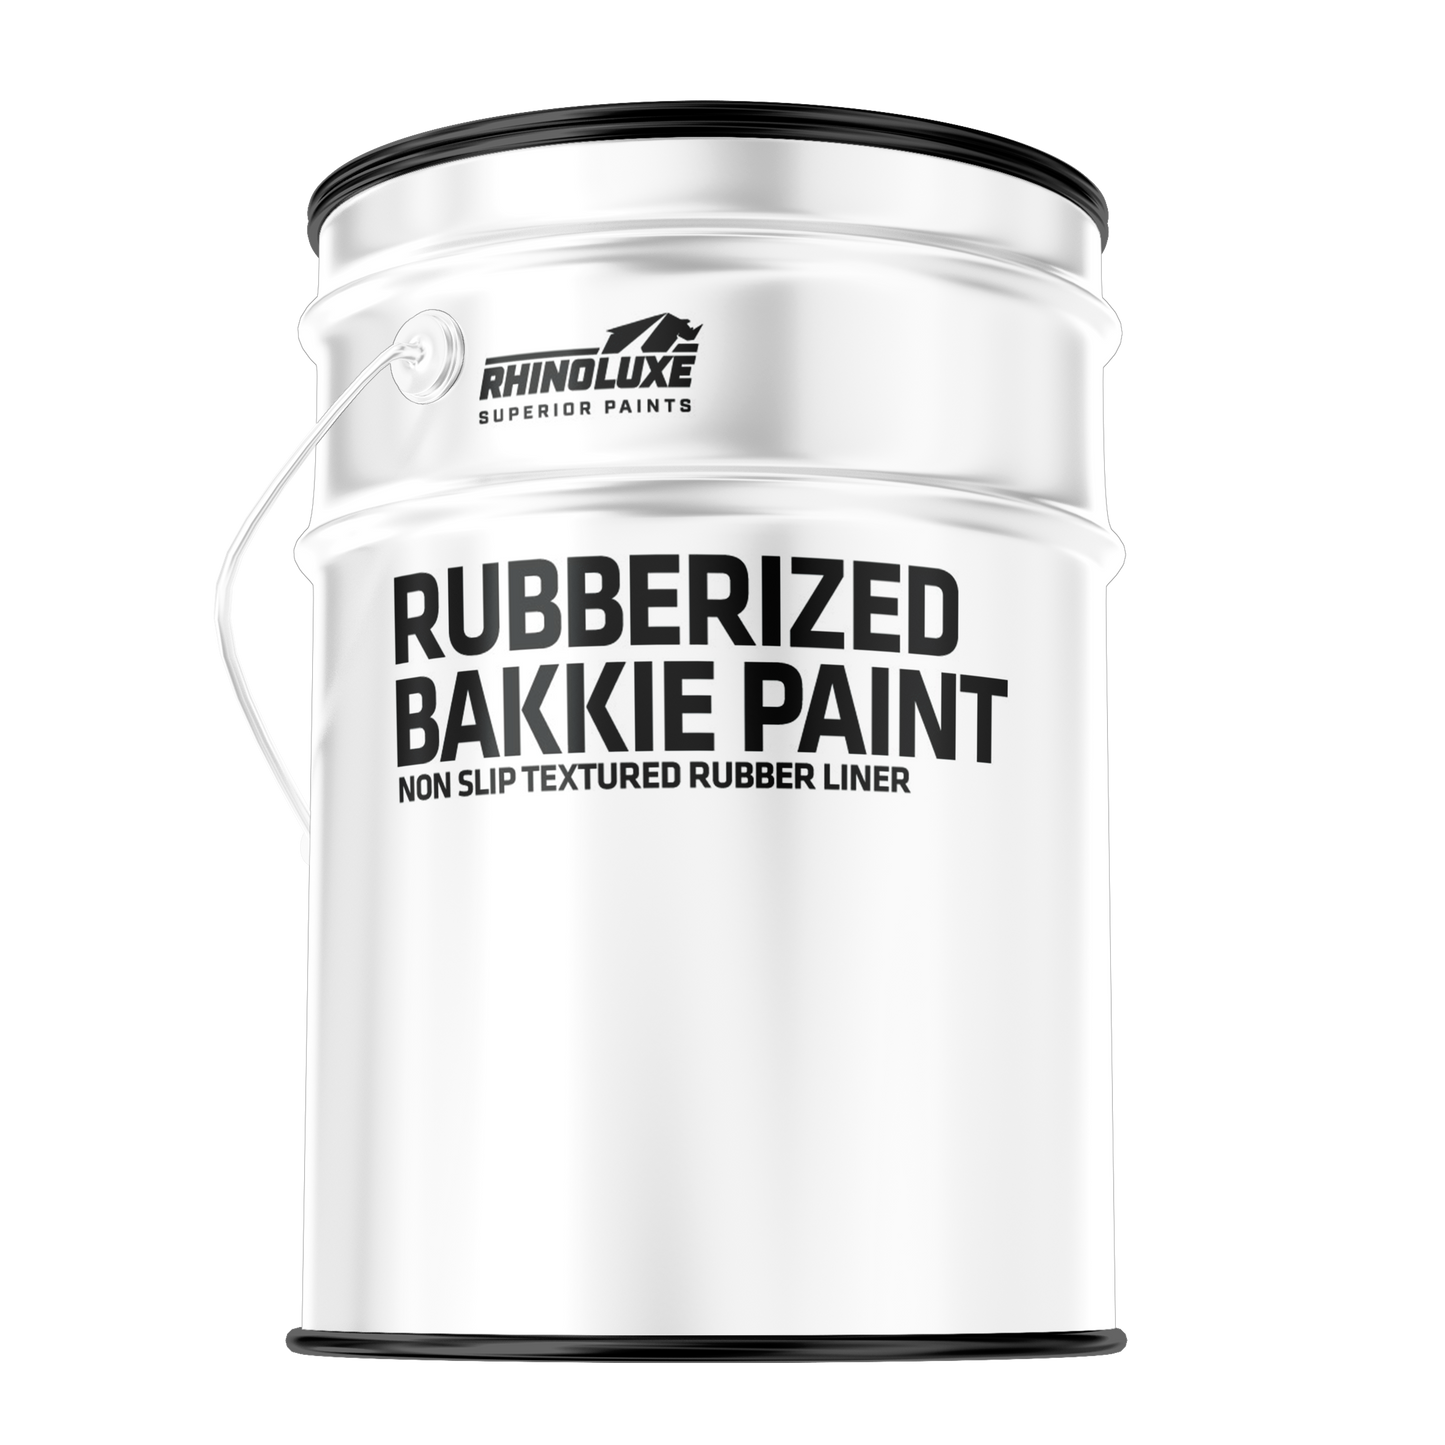 Rubberized bakkie liner non slip textured rubber liner